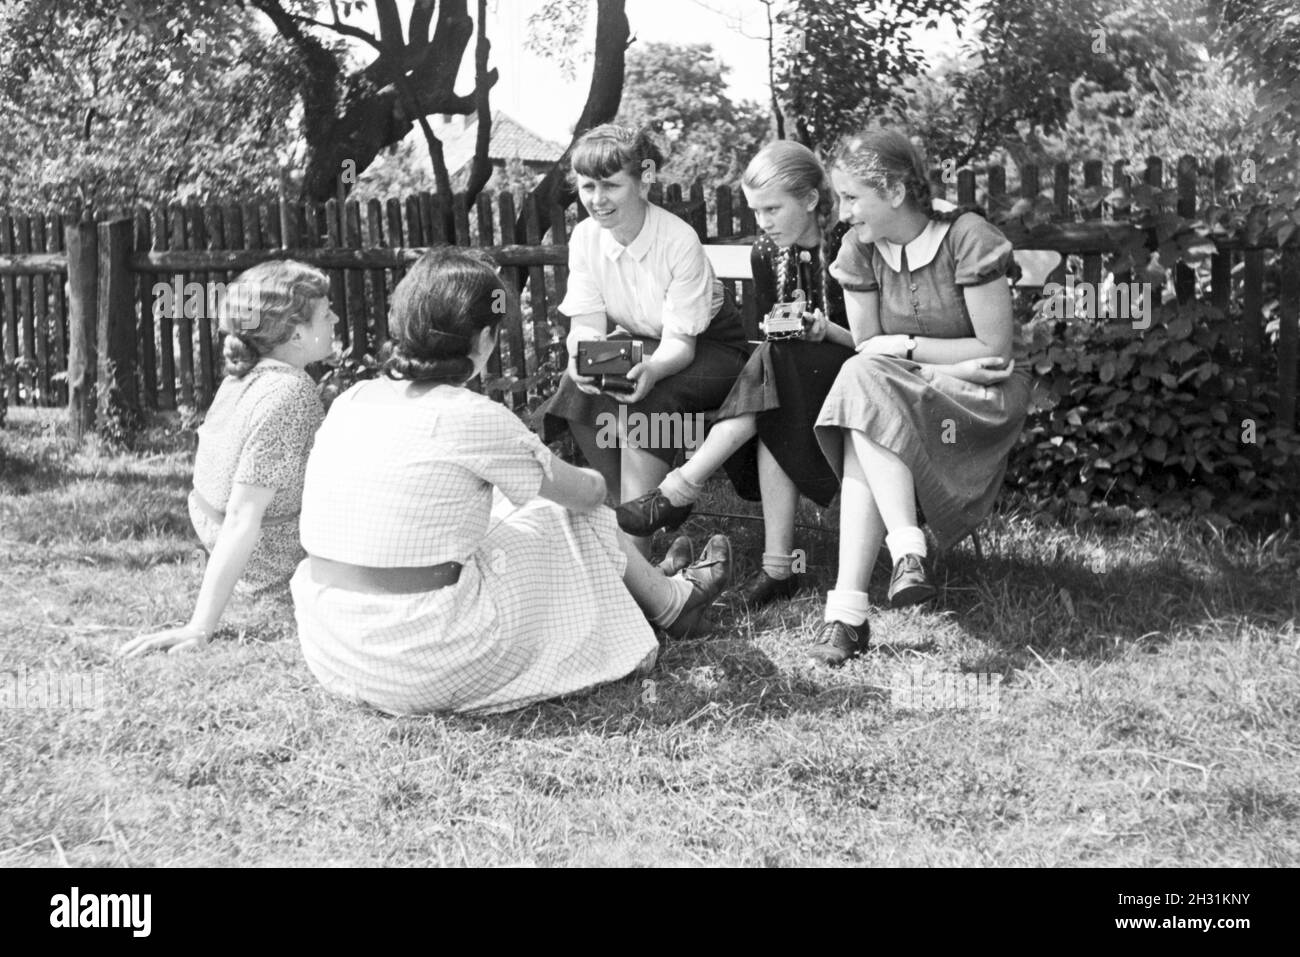 Schülerinnen des Kolonial Schülerheims Harzburg während einer Pause, Deutsches Reich 1937. Students of the colonial residential school Harzburg having a break; Germany 1937. Stock Photo